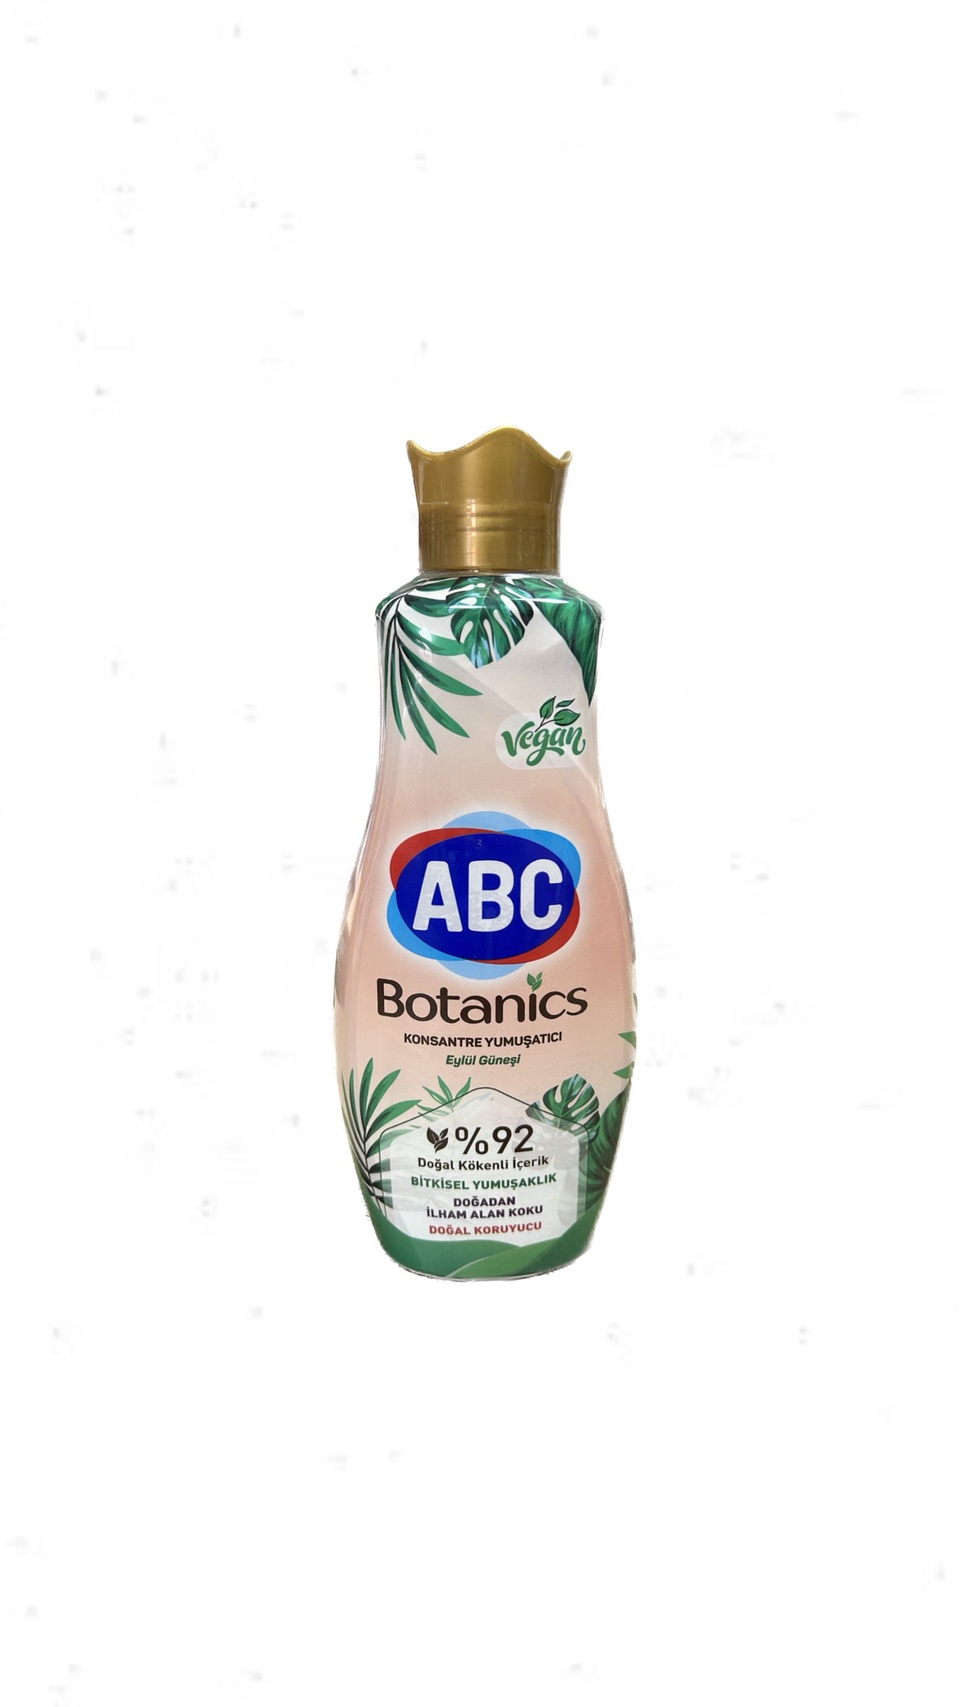 Кондиционер для белья ABC Vegan Botanics Сентябрьское солнце 1440г - 400 ₽, заказать онлайн.